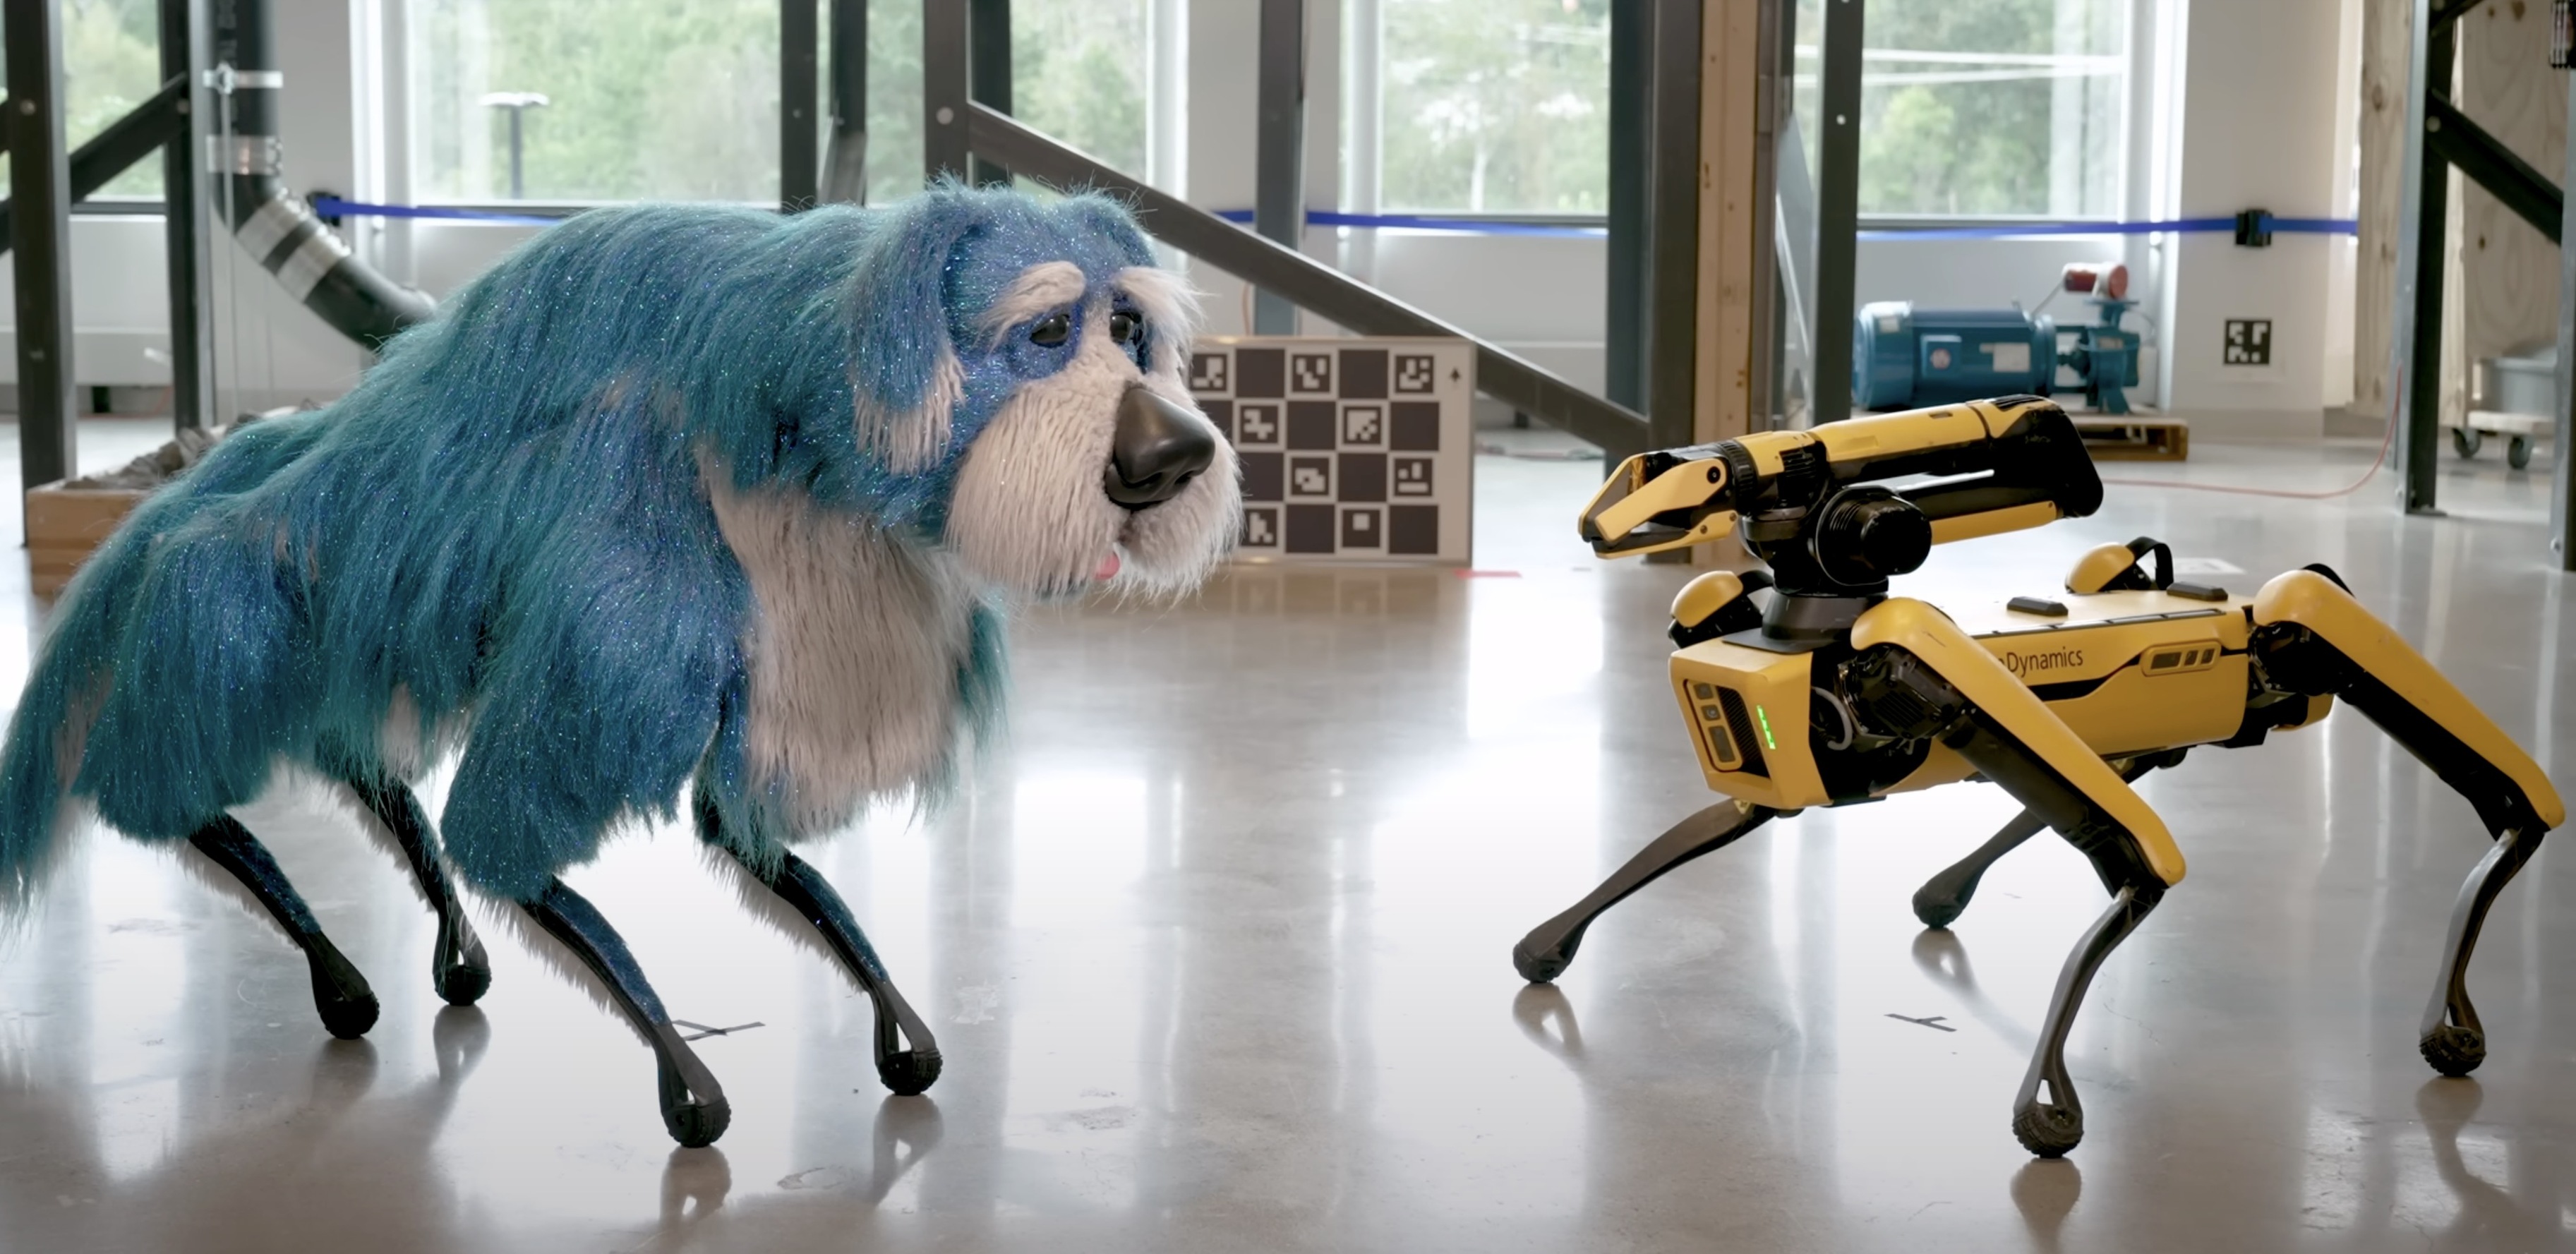 Boston Dynamics представила своего робопса Spot в виде крупной лохматой собаки